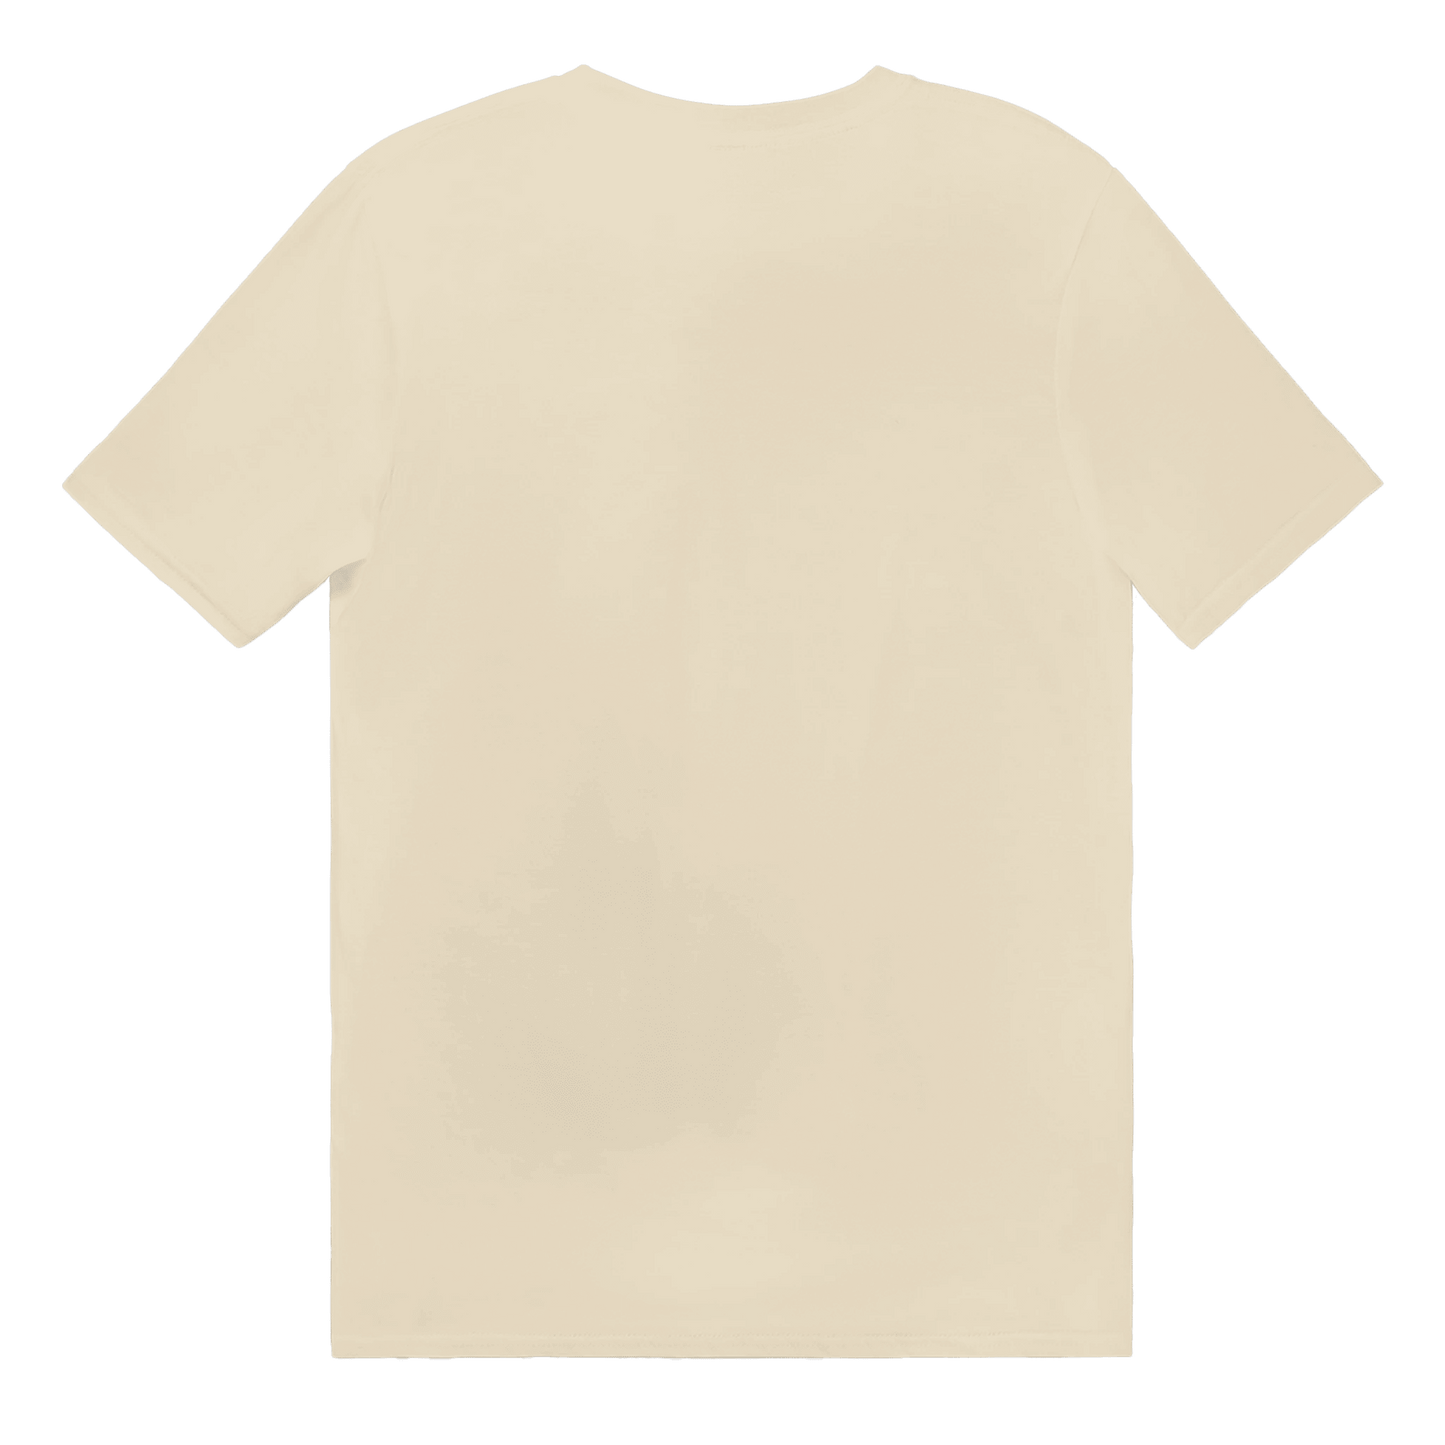 Köttbullar - T-shirt 